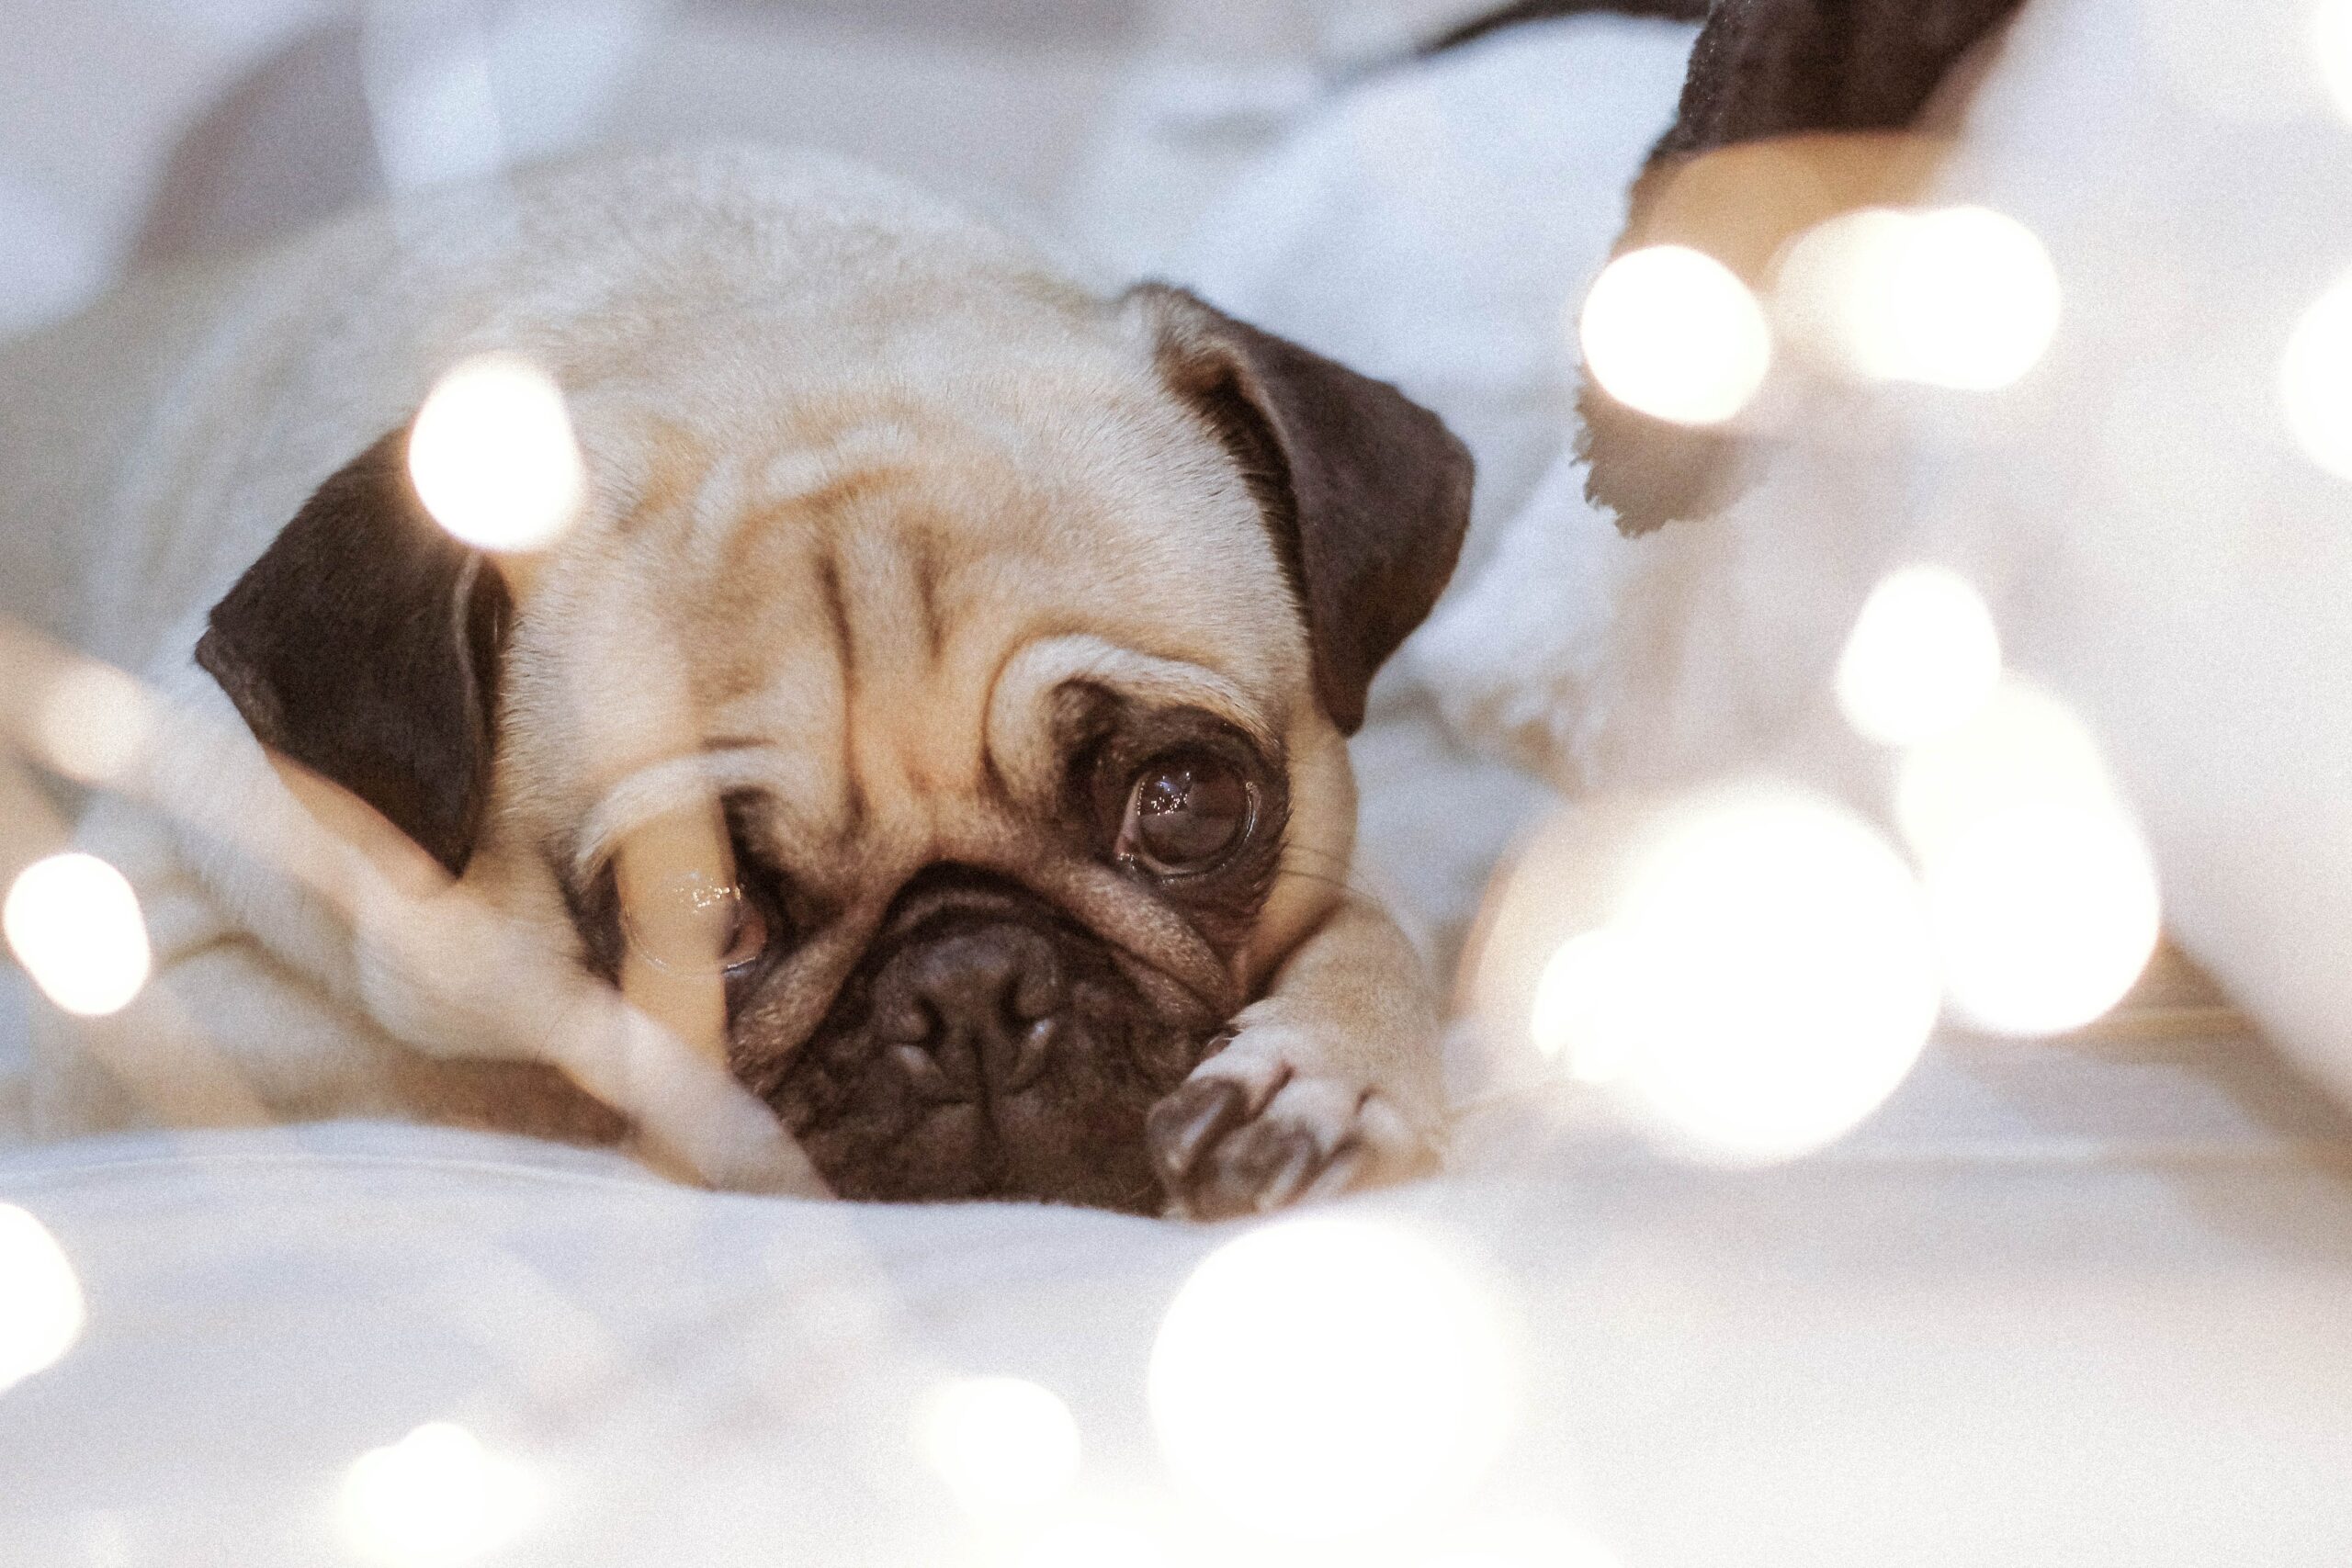 Are LED Lights Safe For Pets?